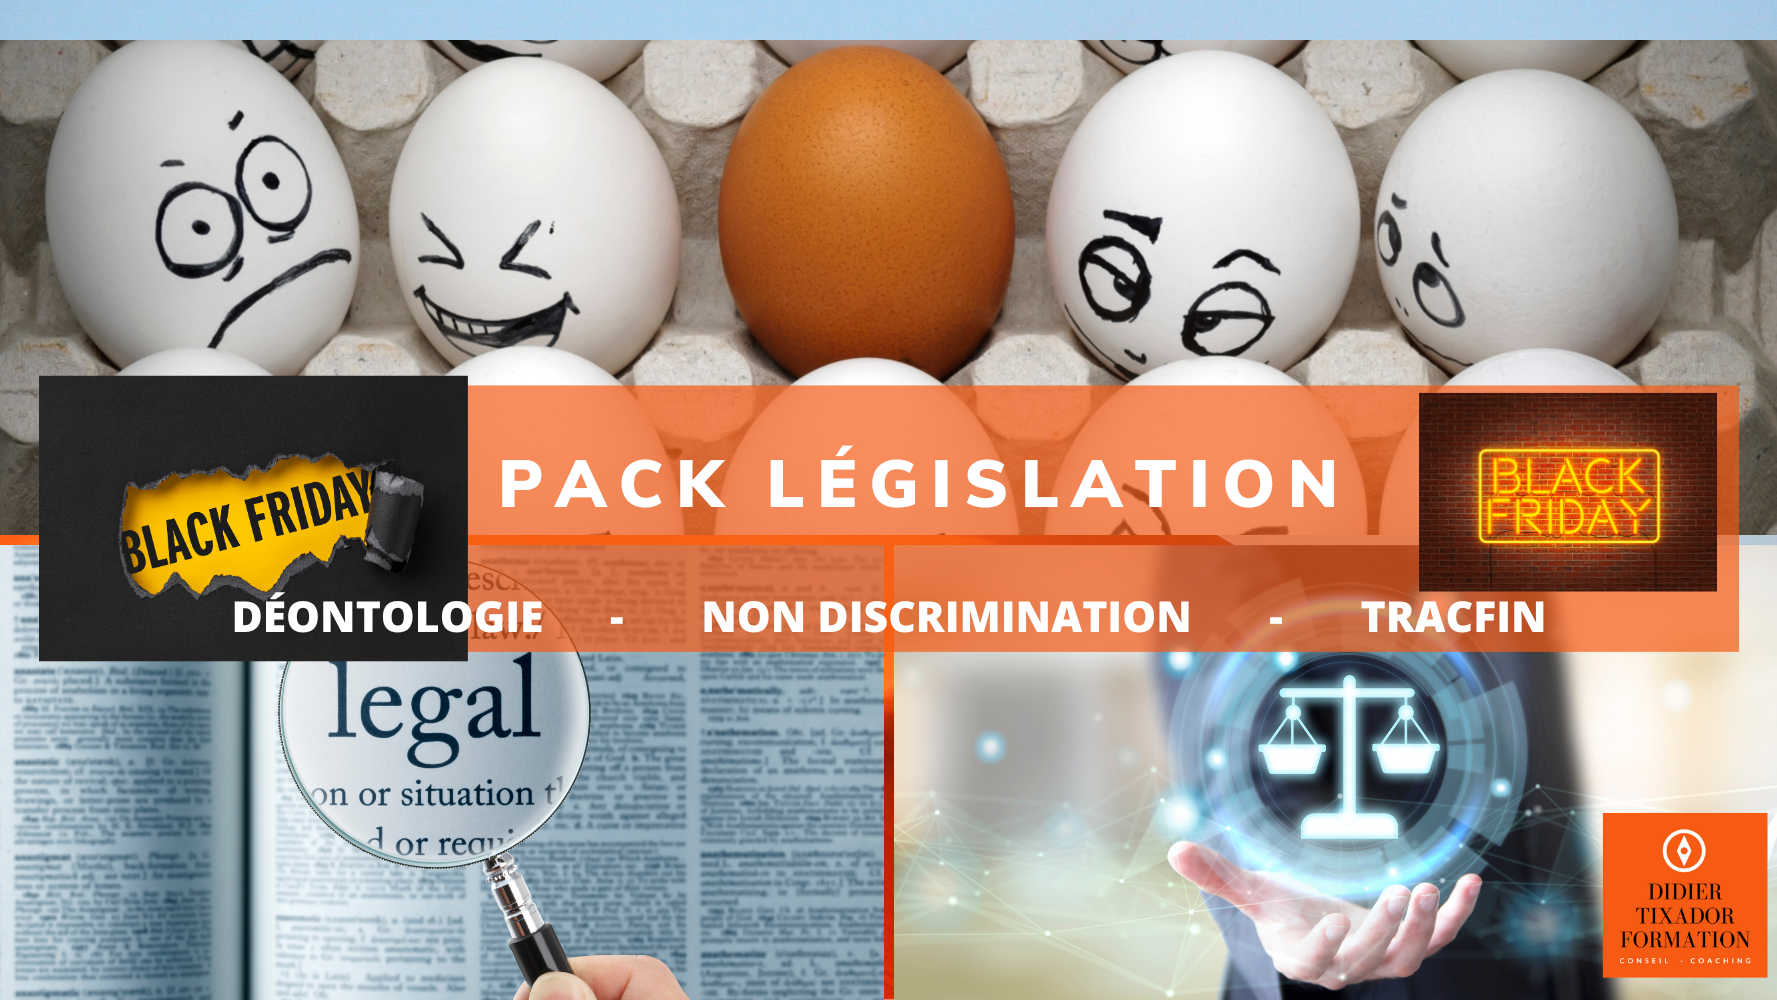 Représentation de la formation : 🏢 Pack législatif
 Éthique  et déontologie🤝,   
Non-Discrimination 🌈 et Accès au Logement 🏠 
Focus TRACFIN 🔍 

 Offre Spéciale Black Friday 🖤